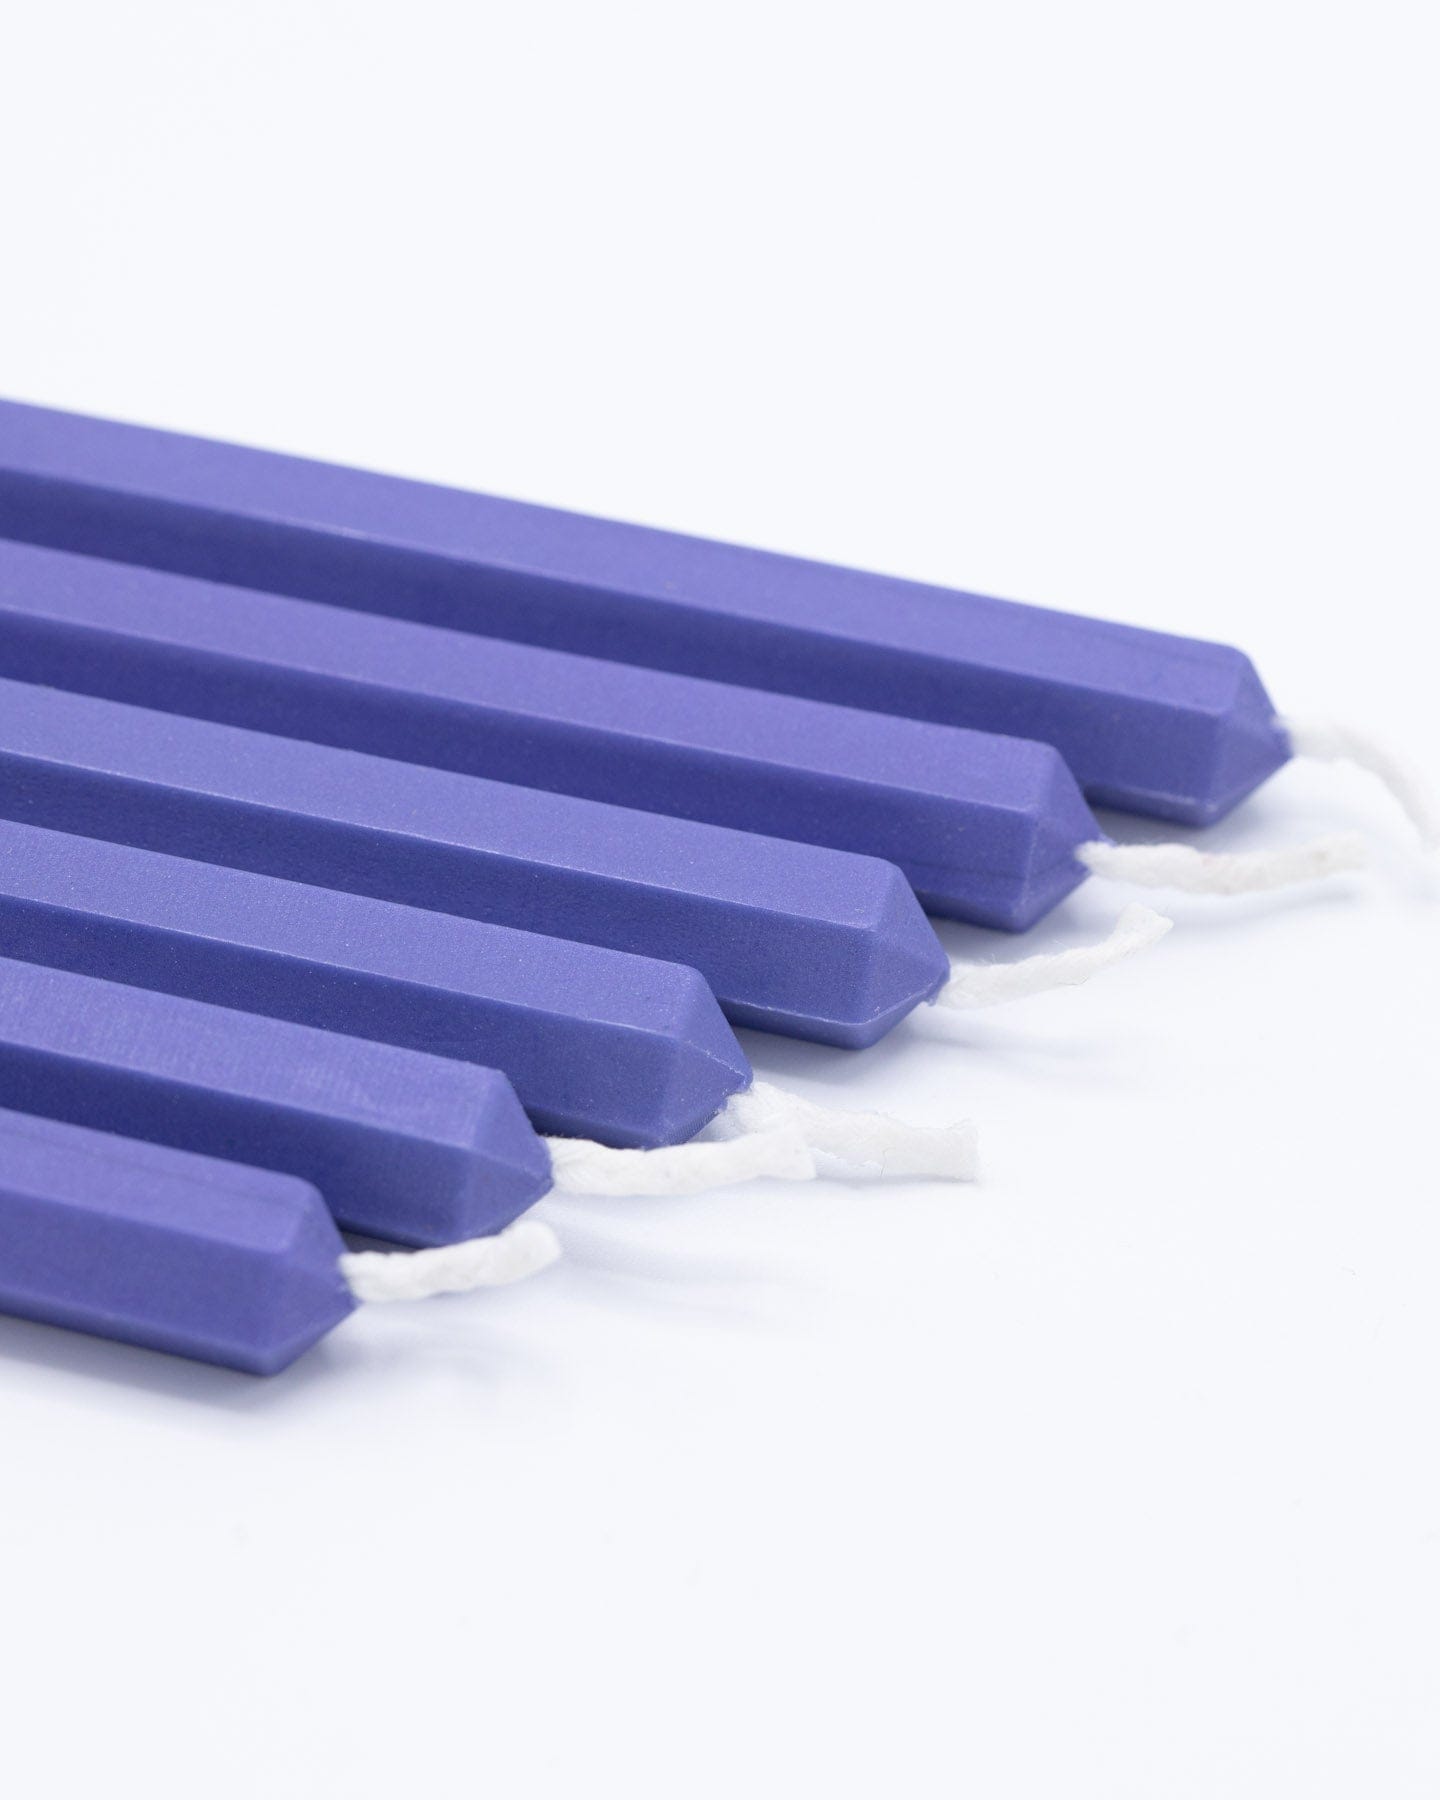 Scottish Thistle Blue Sealing Wax Sticks Cognitive Surplus